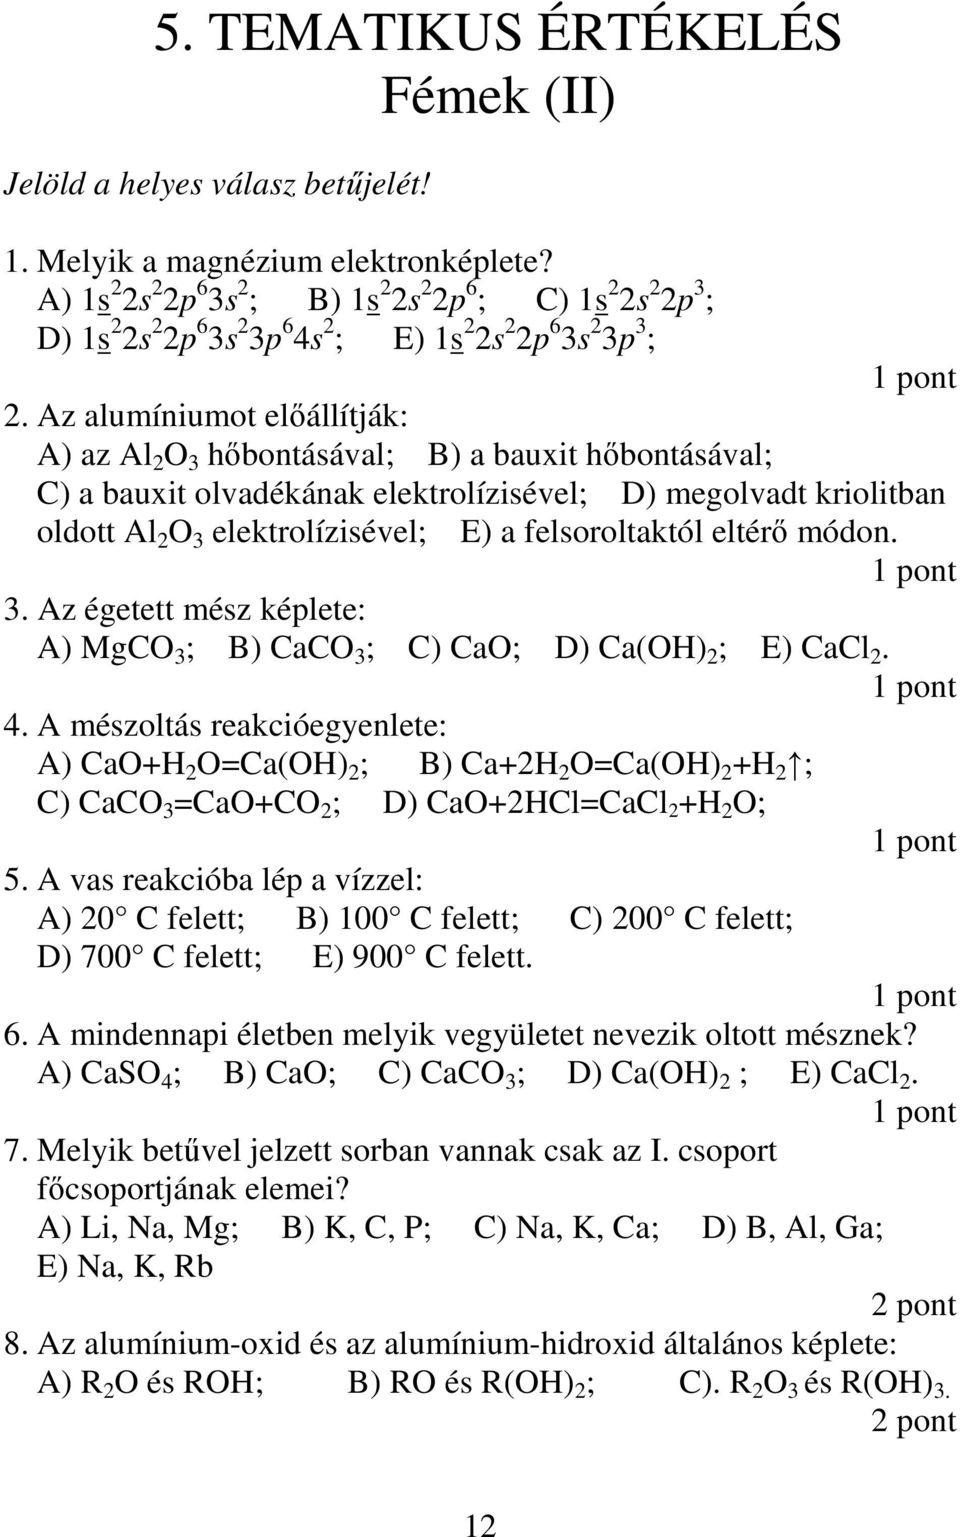 Az alumíniumot elıállítják: A) az Al 2 O 3 hıbontásával; B) a bauxit hıbontásával; C) a bauxit olvadékának elektrolízisével; D) megolvadt kriolitban oldott Al 2 O 3 elektrolízisével; E) a